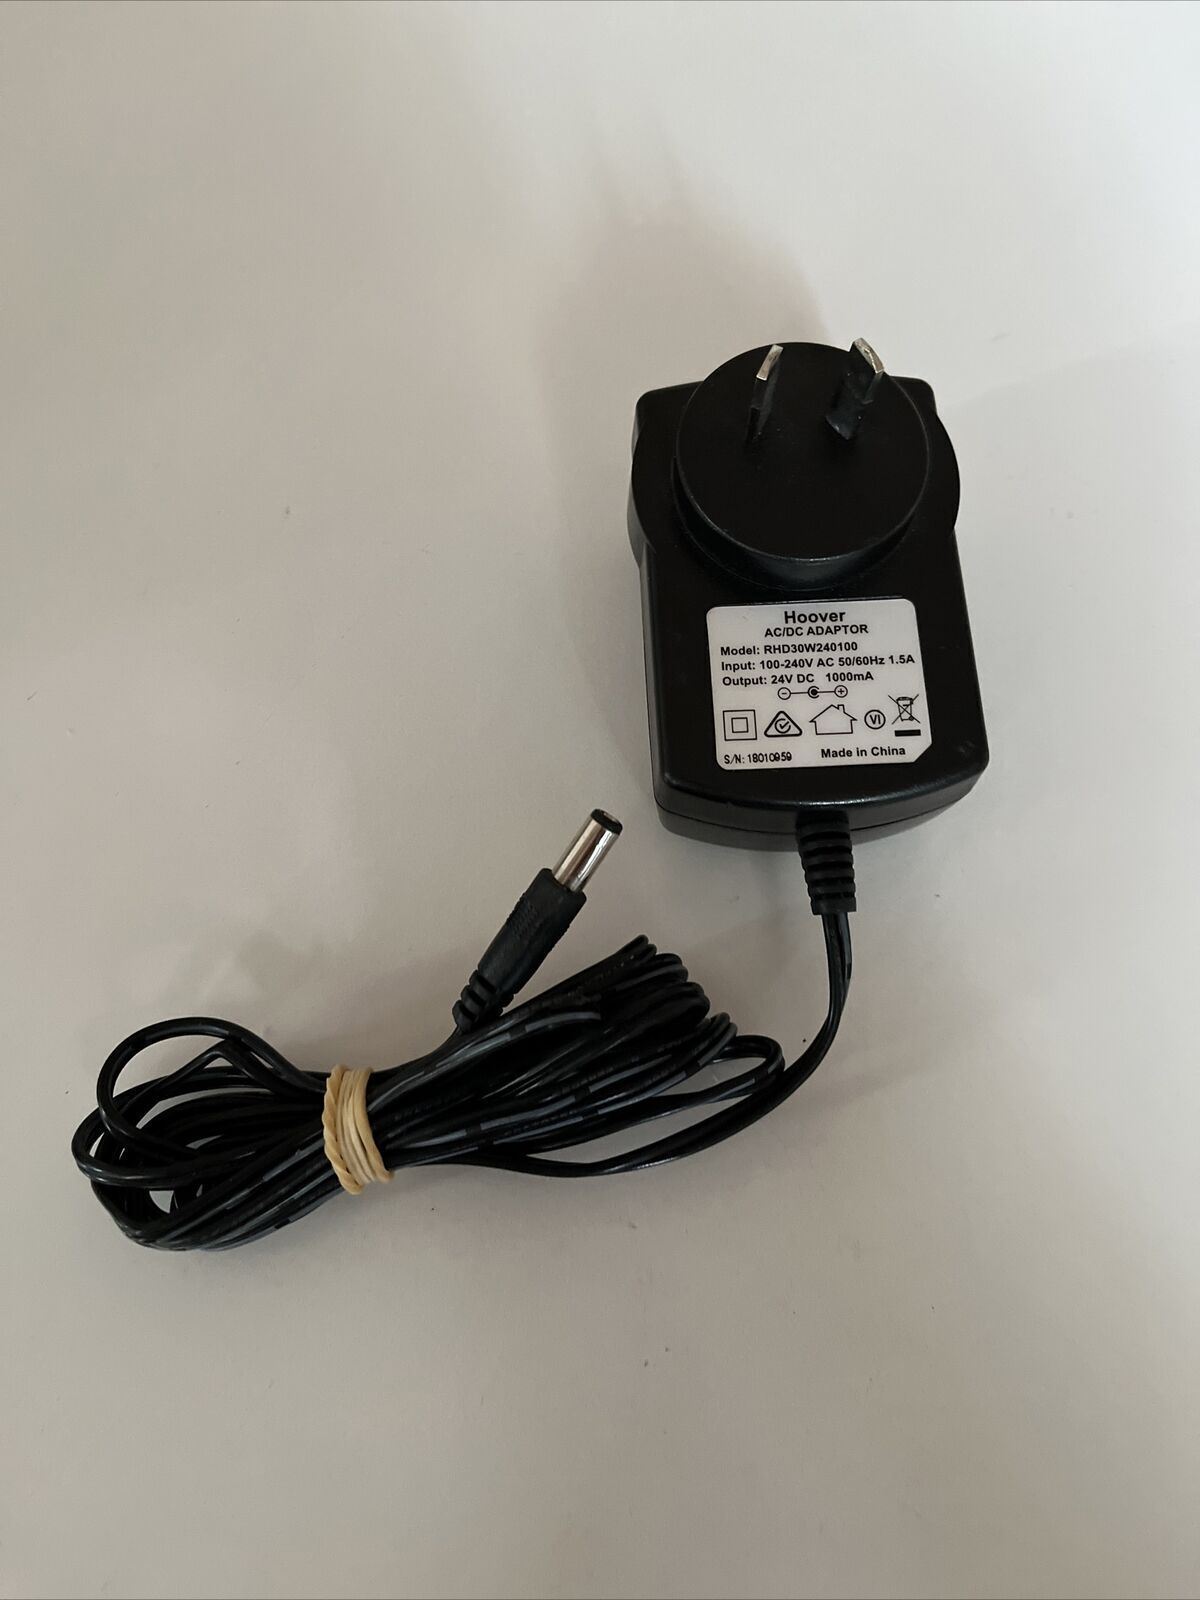 Genuine Hoover RHD30W240100 AC Adapter 24 V Power Supply Model: Hoover RHD30W240100 AC Adapter Colour: Black Compati